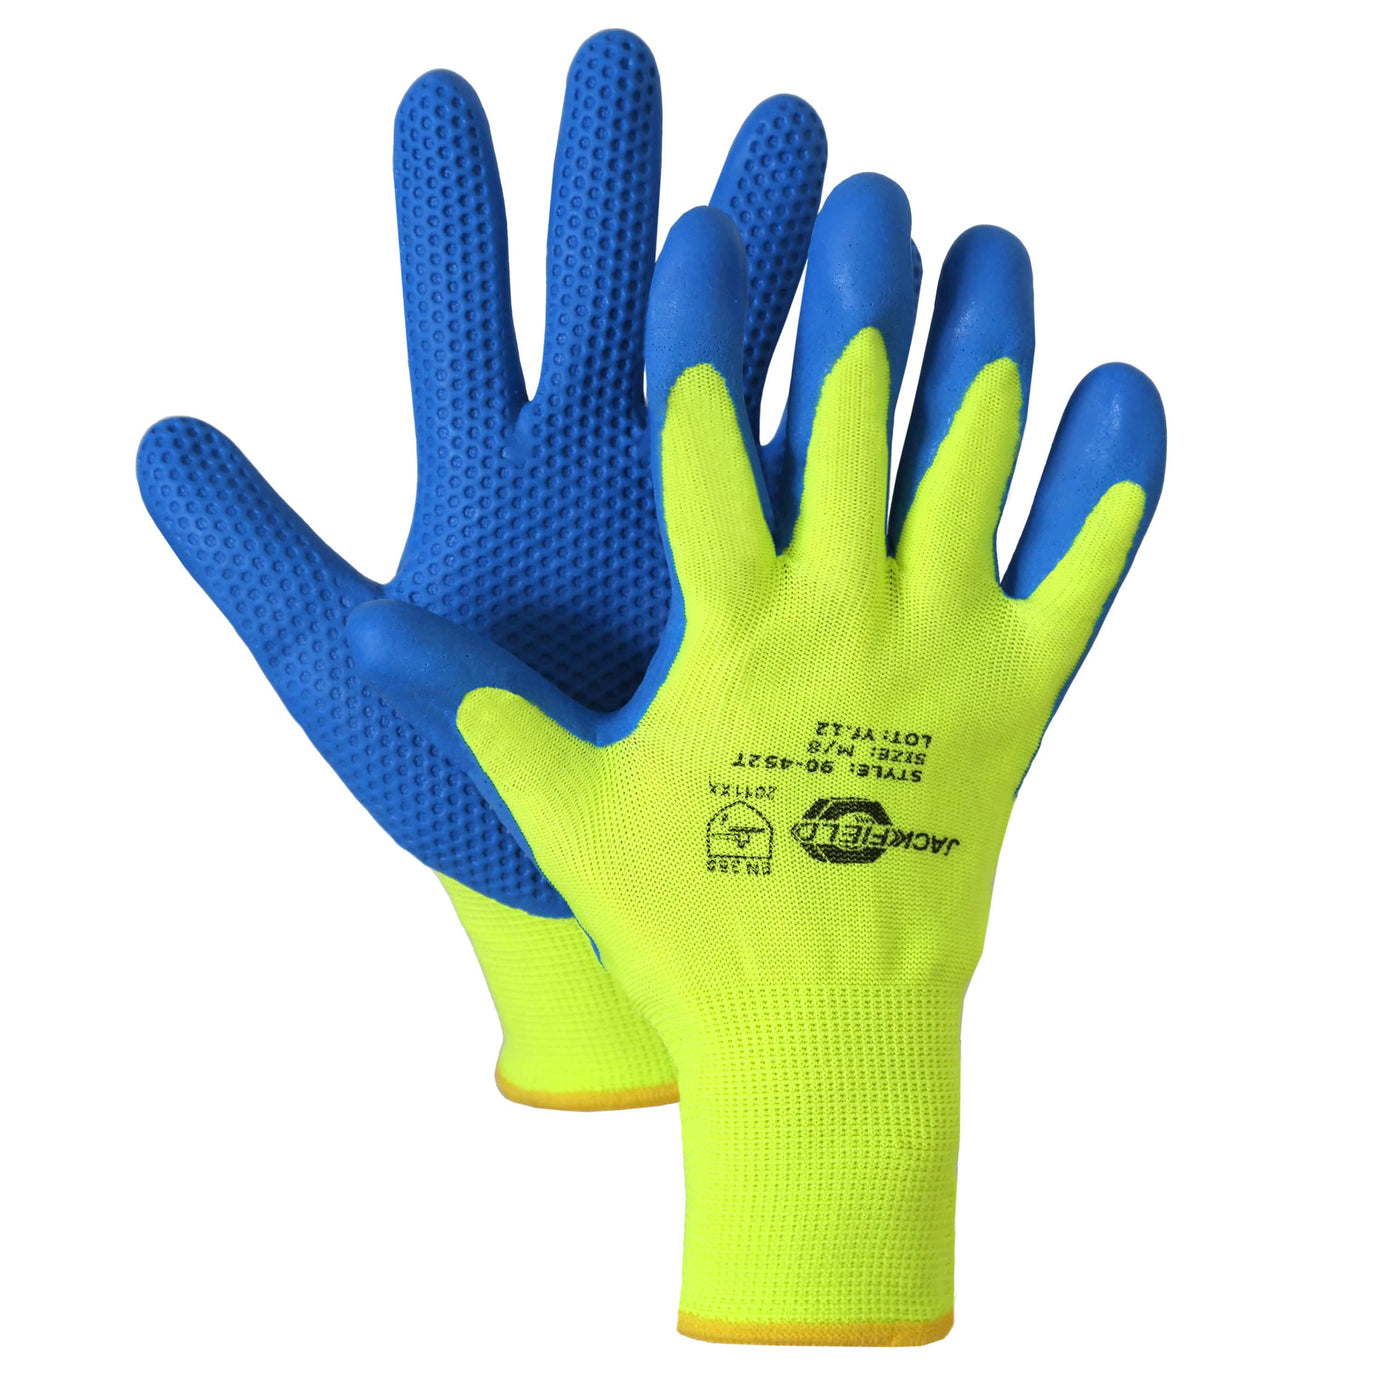 Jackfield latex Foam Gloves